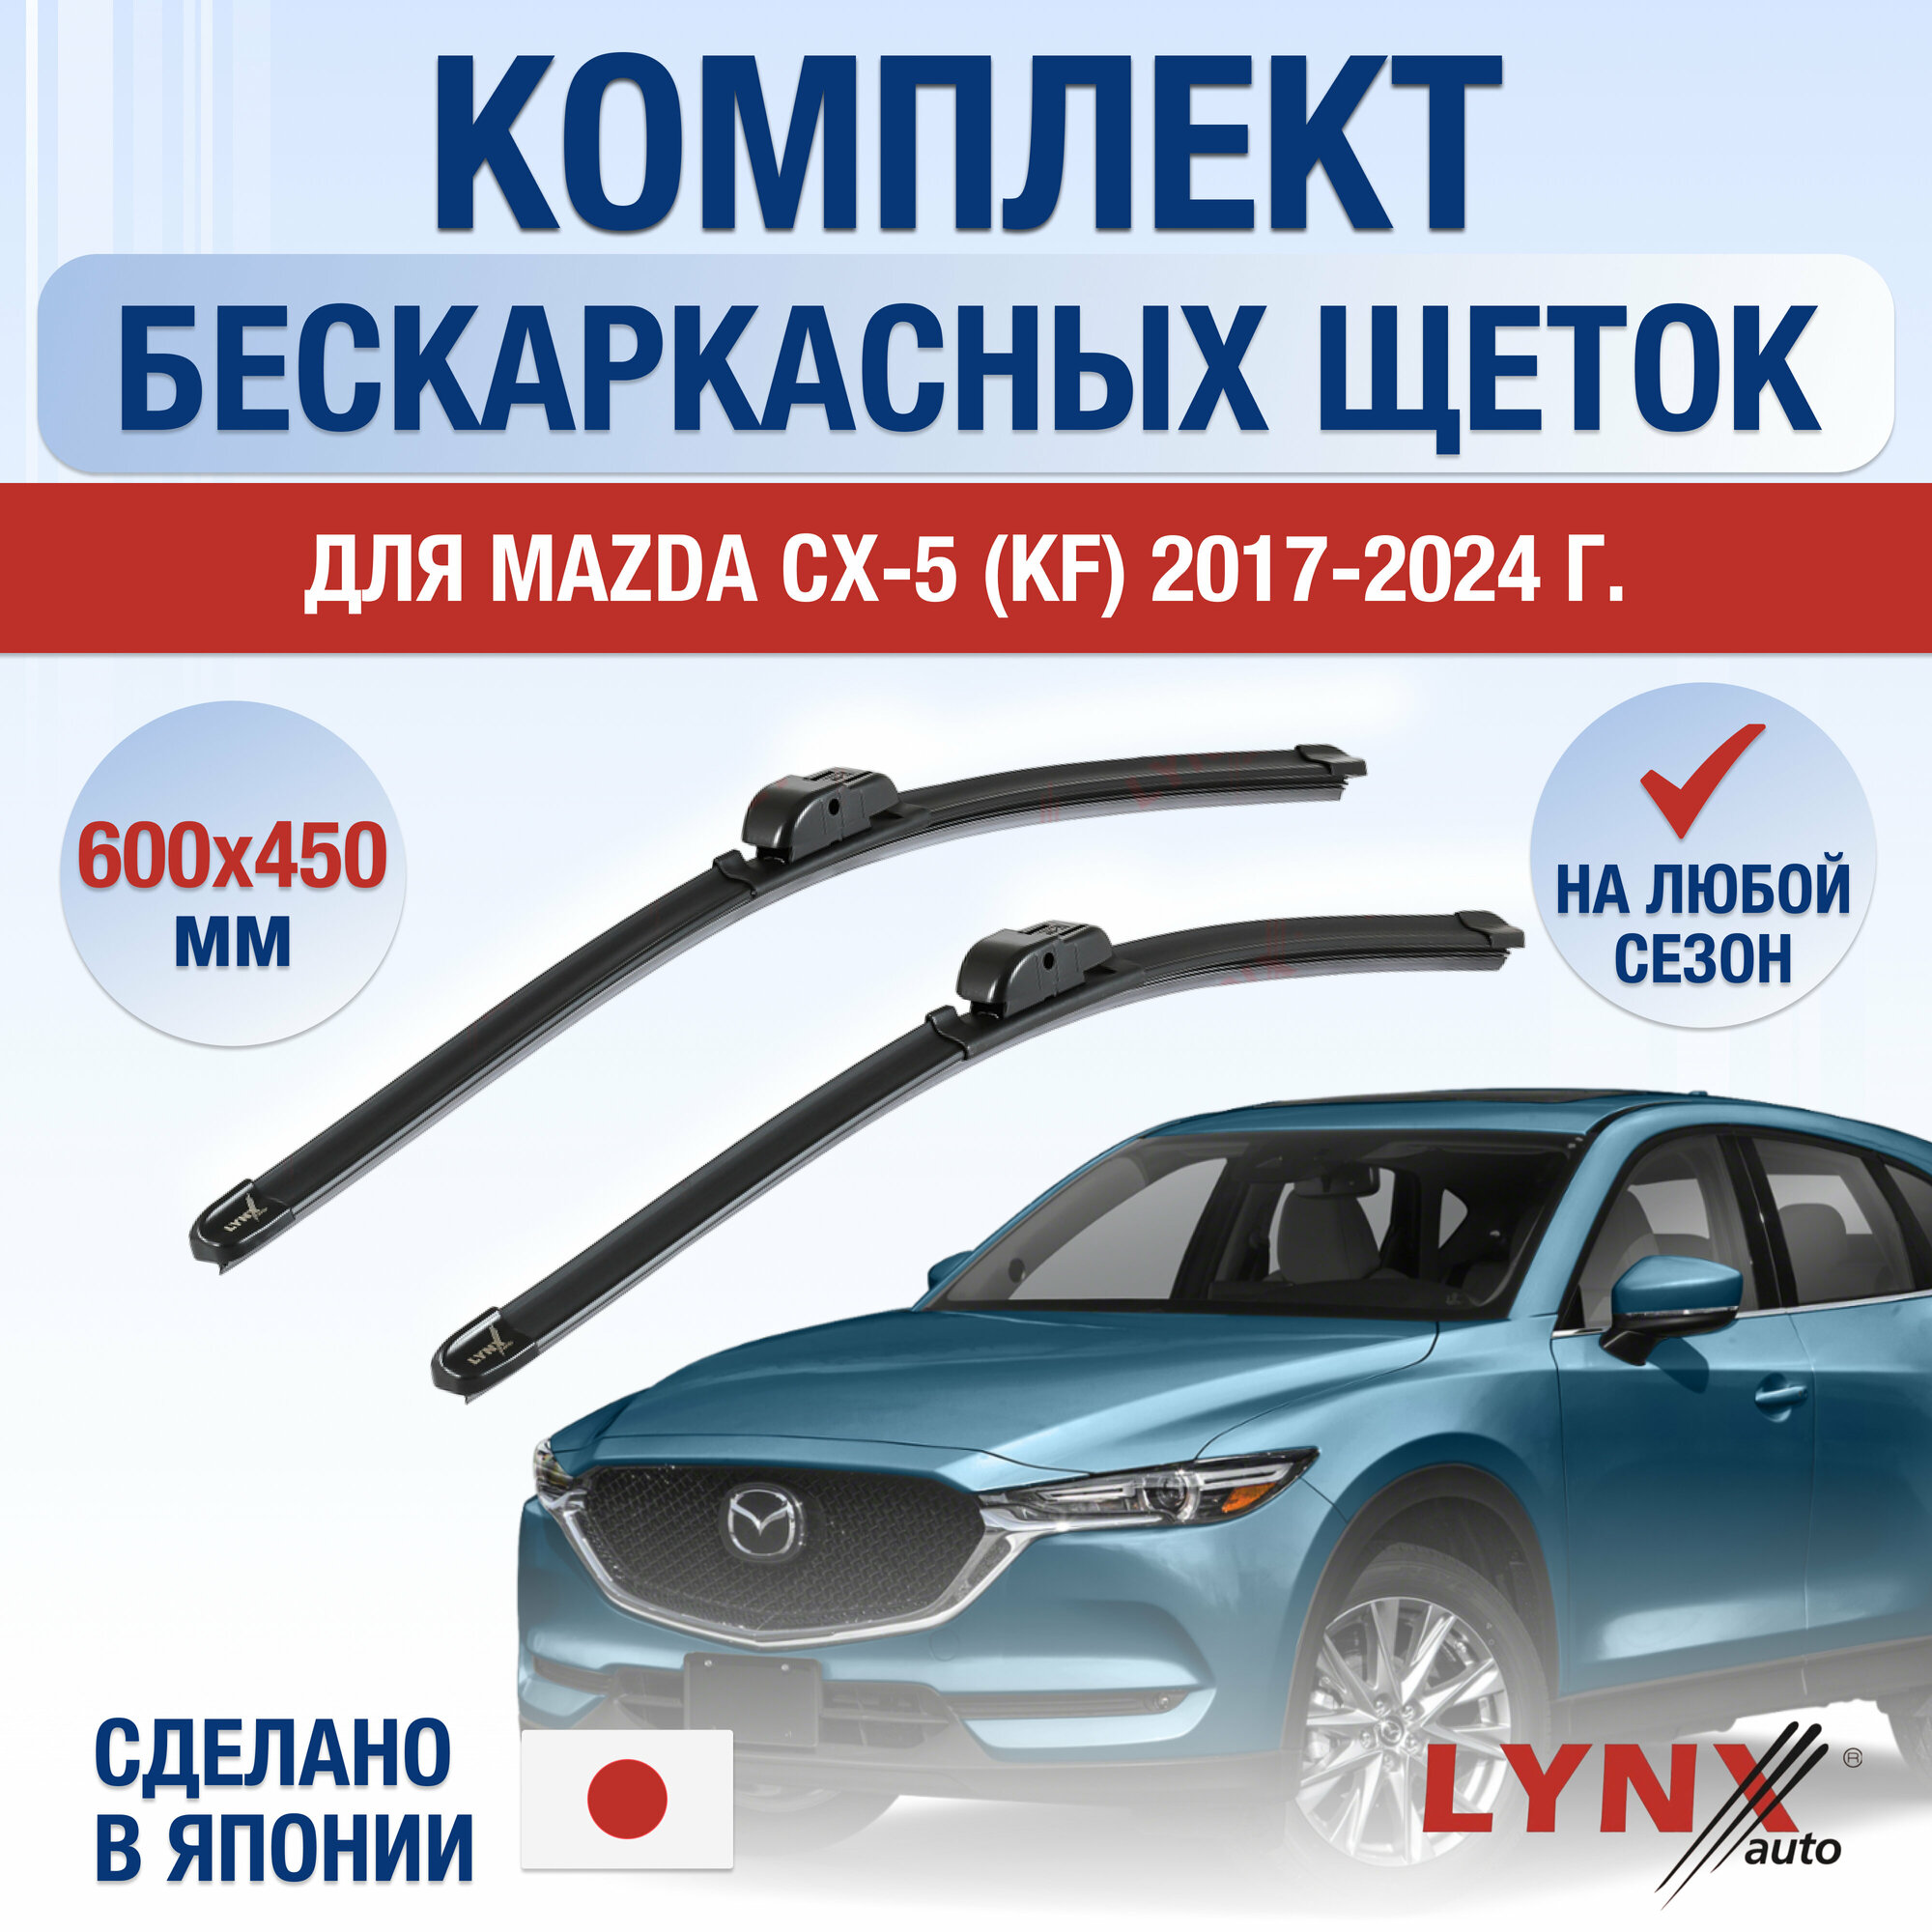 Щетки стеклоочистителя для Mazda CX-5 (KF) / 2017 2018 2019 2020 2021 2022 2023 / Комплект бескаркасных дворников 600 450 мм Мазда СХ-5